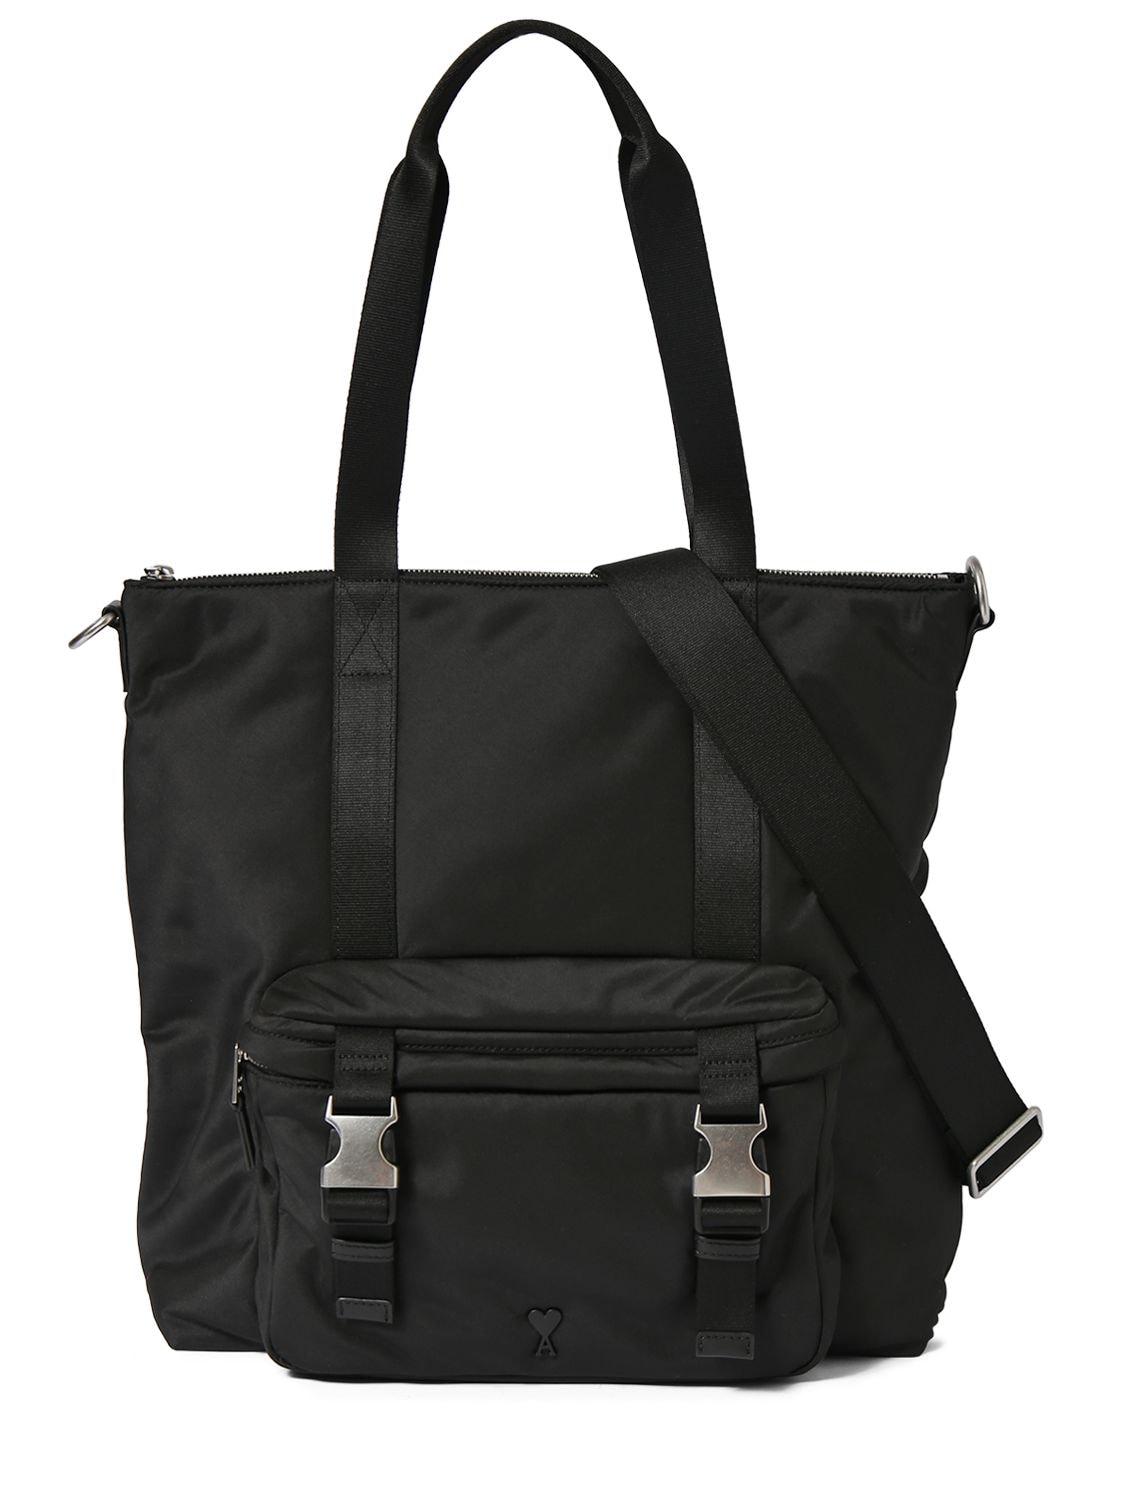 Ami Alexandre Mattiussi Adc Logo Tote Bag In Black